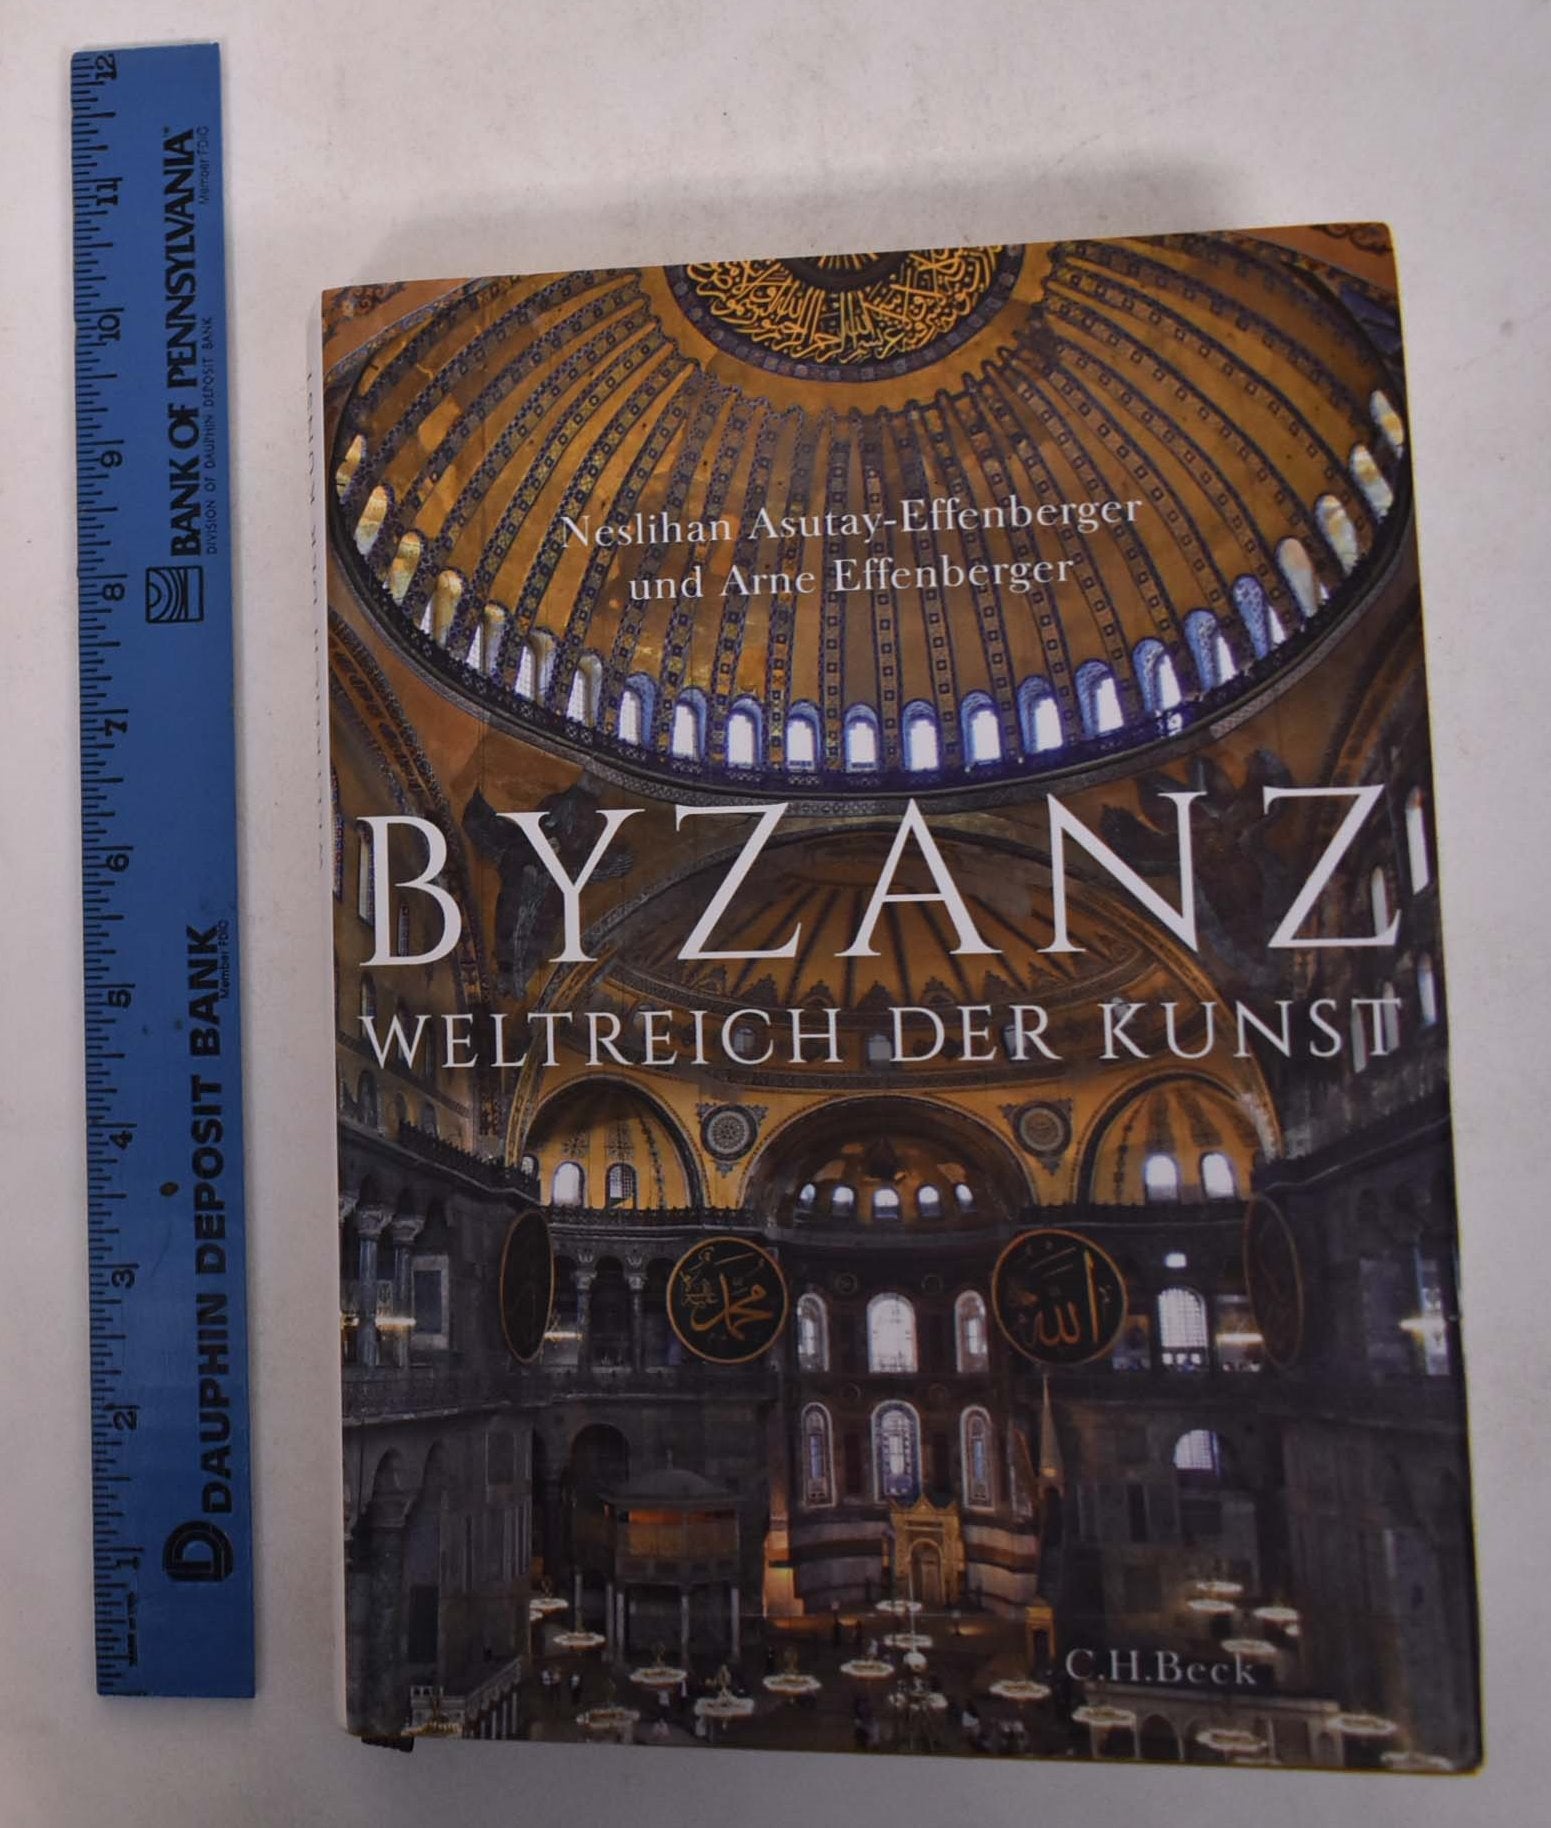 Byzanz: Weltreich der Kunst by Neslihan Asutay-Effenberger, Arne  Effenberger on Mullen Books